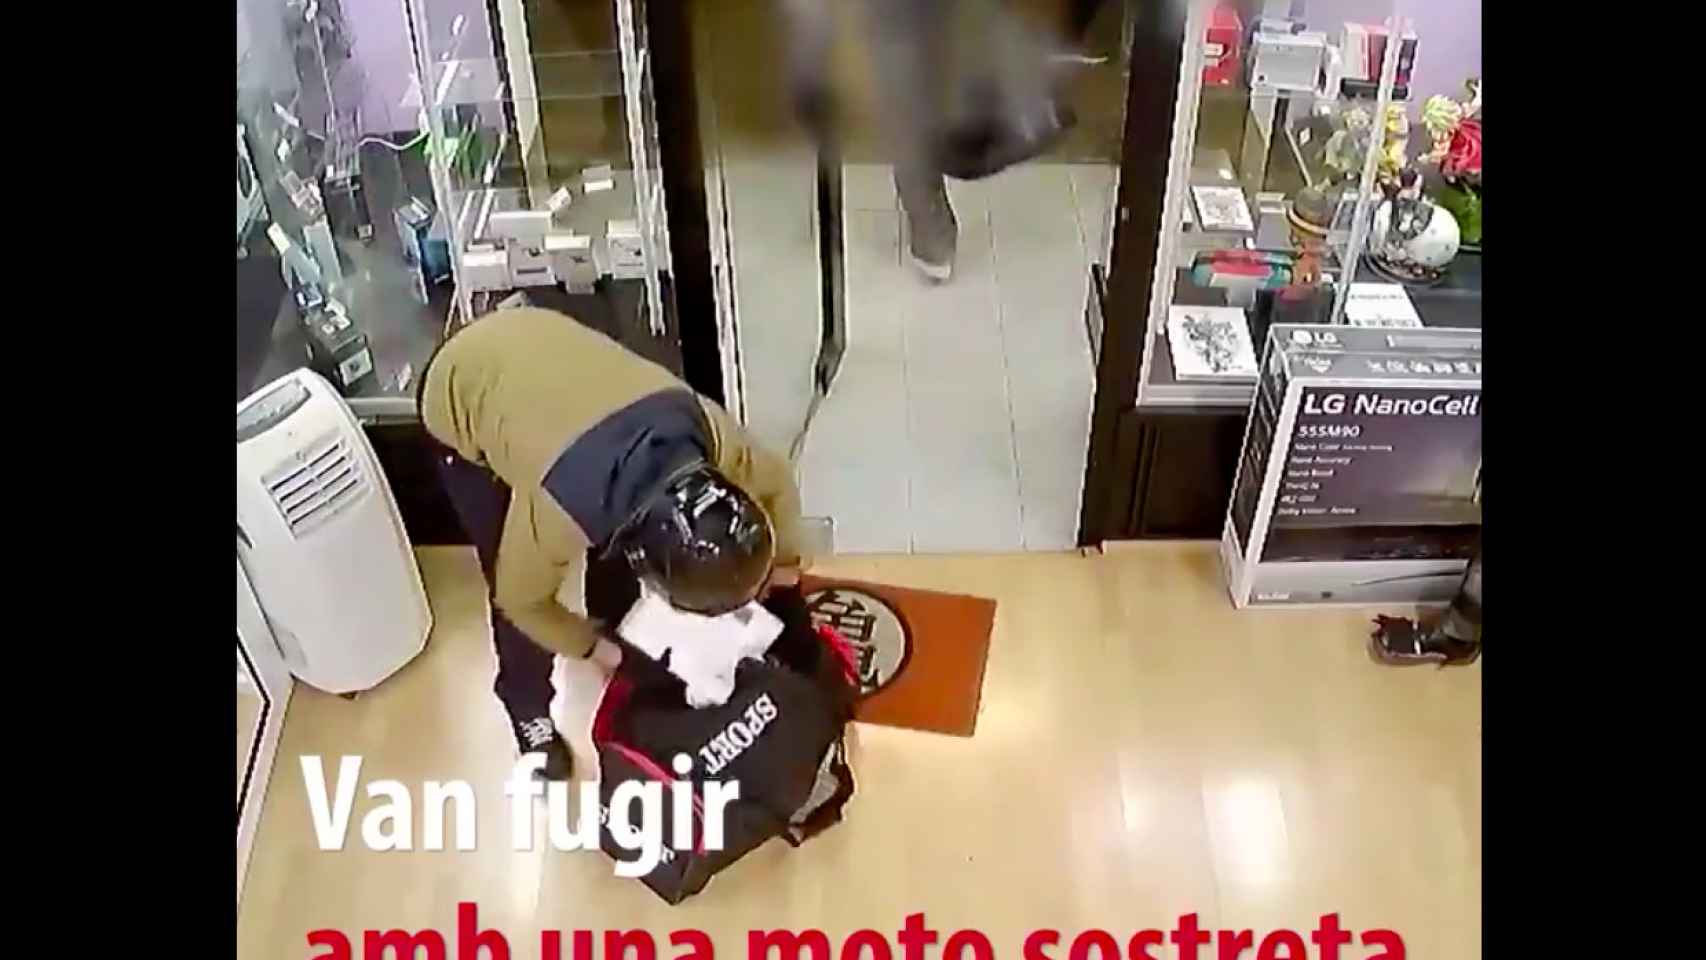 Uno de los atracadores introduce móviles robados en una bolsa / MOSSOS D'ESQUADRA